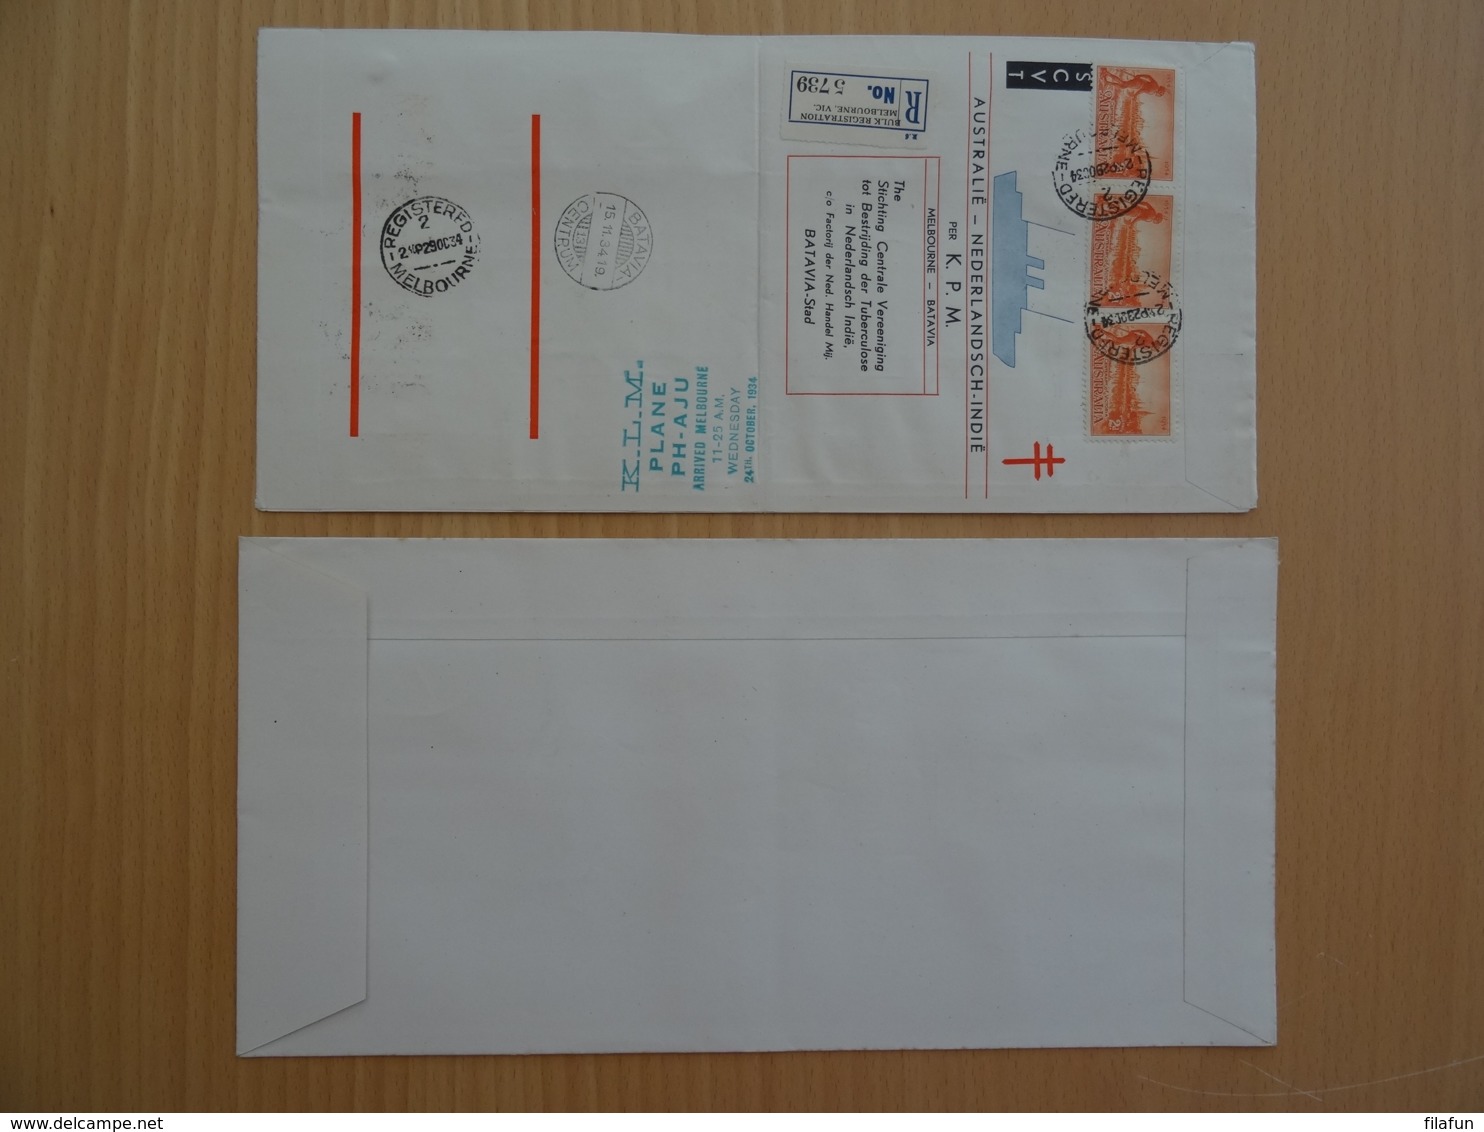 Nederlands Indië - 1934 - Uiver Envelop London-Melbourne Race - Uitgave SCVT Met Originele Uiver-hoes - Nummer 1751 - Nederlands-Indië